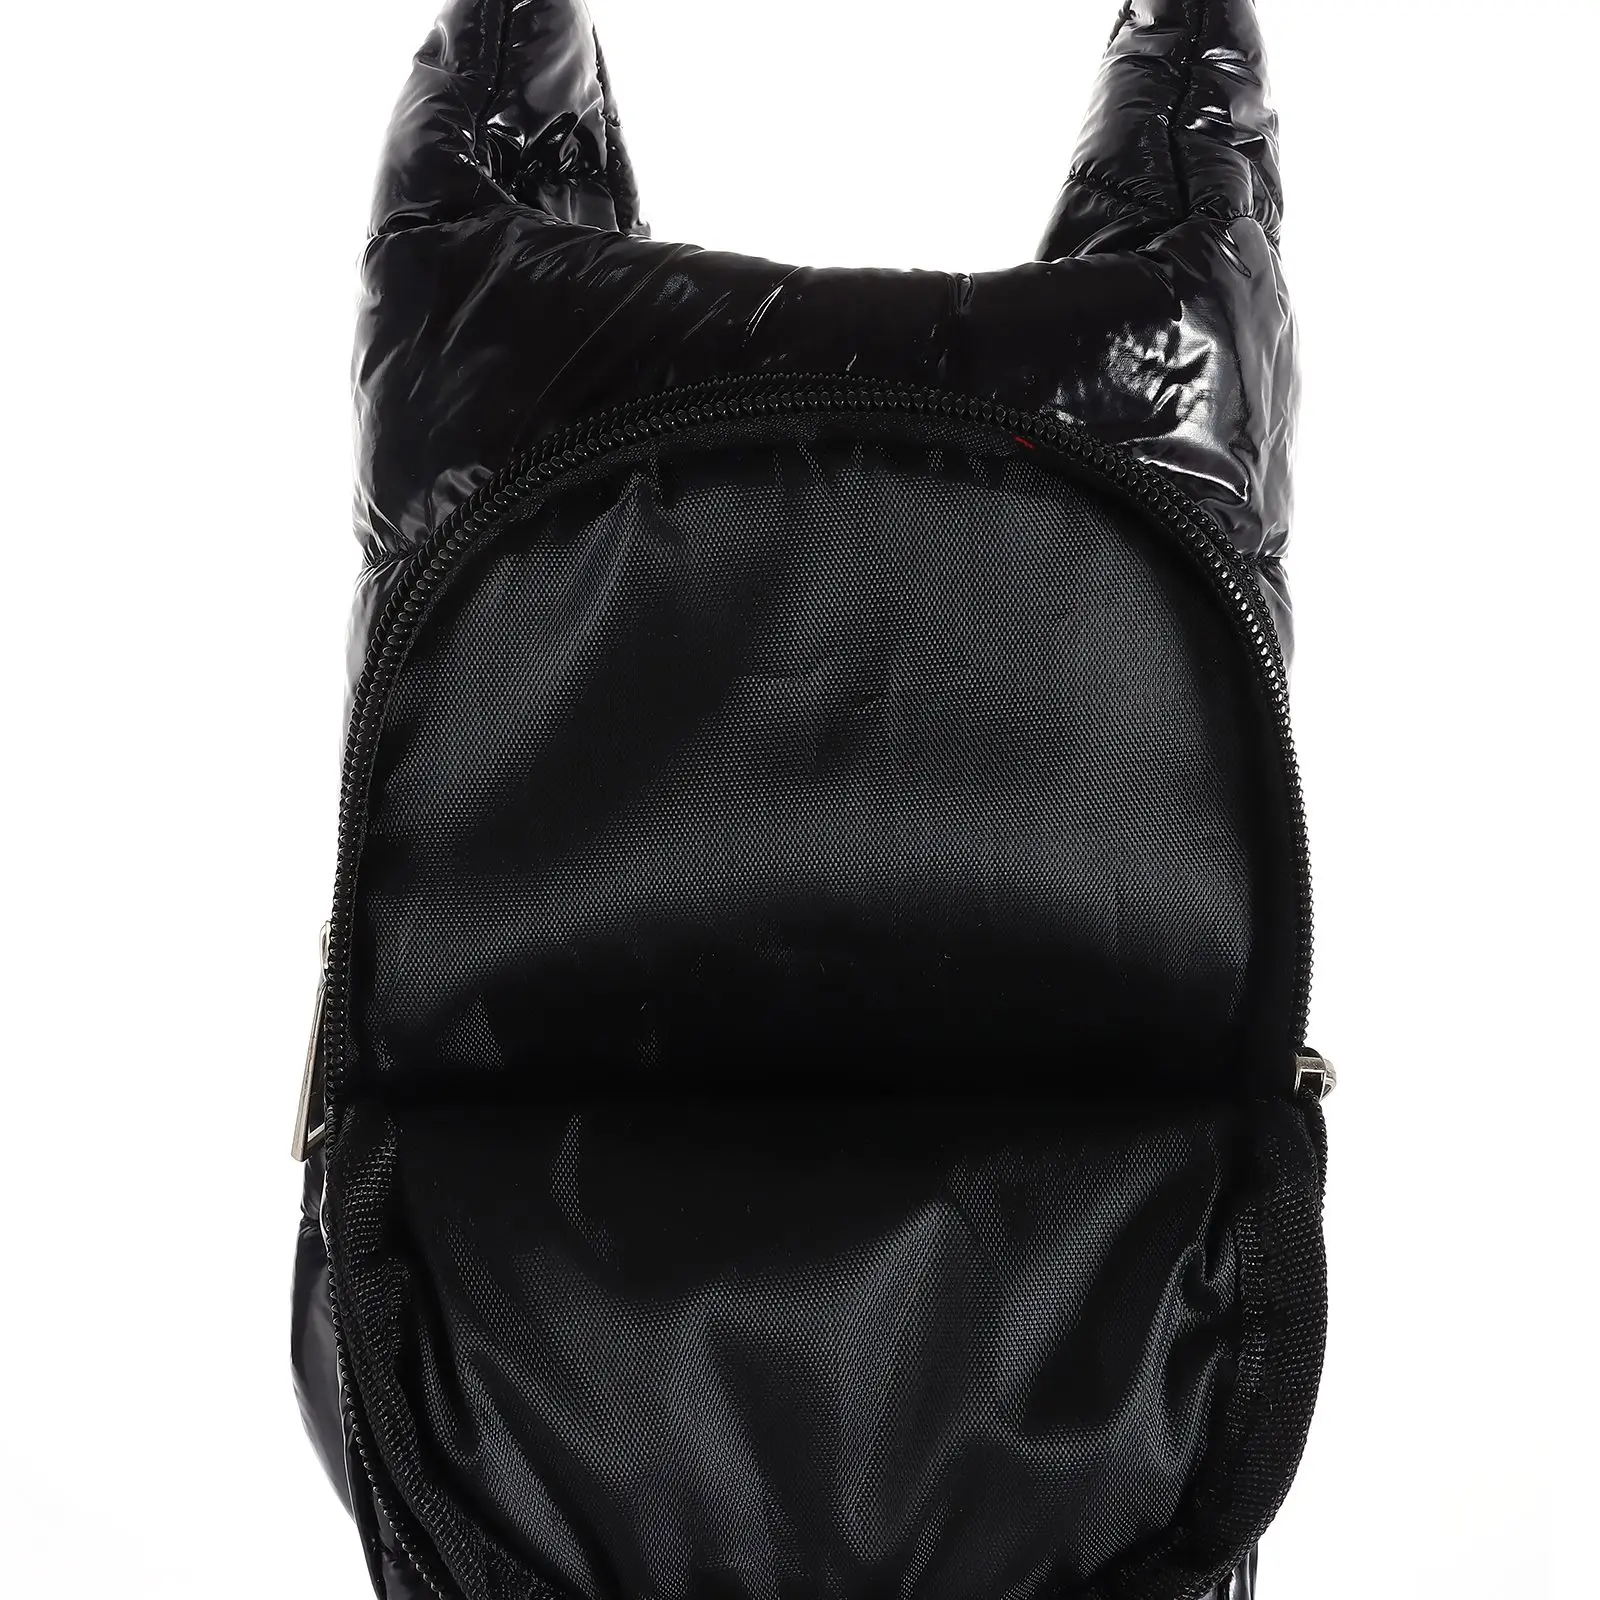 

Стильная сумка-Кроссбоди для воды, стеганая сумка-переноска для бутылок с водой с подъемным ремешком, стильная модная сумочка-тоут